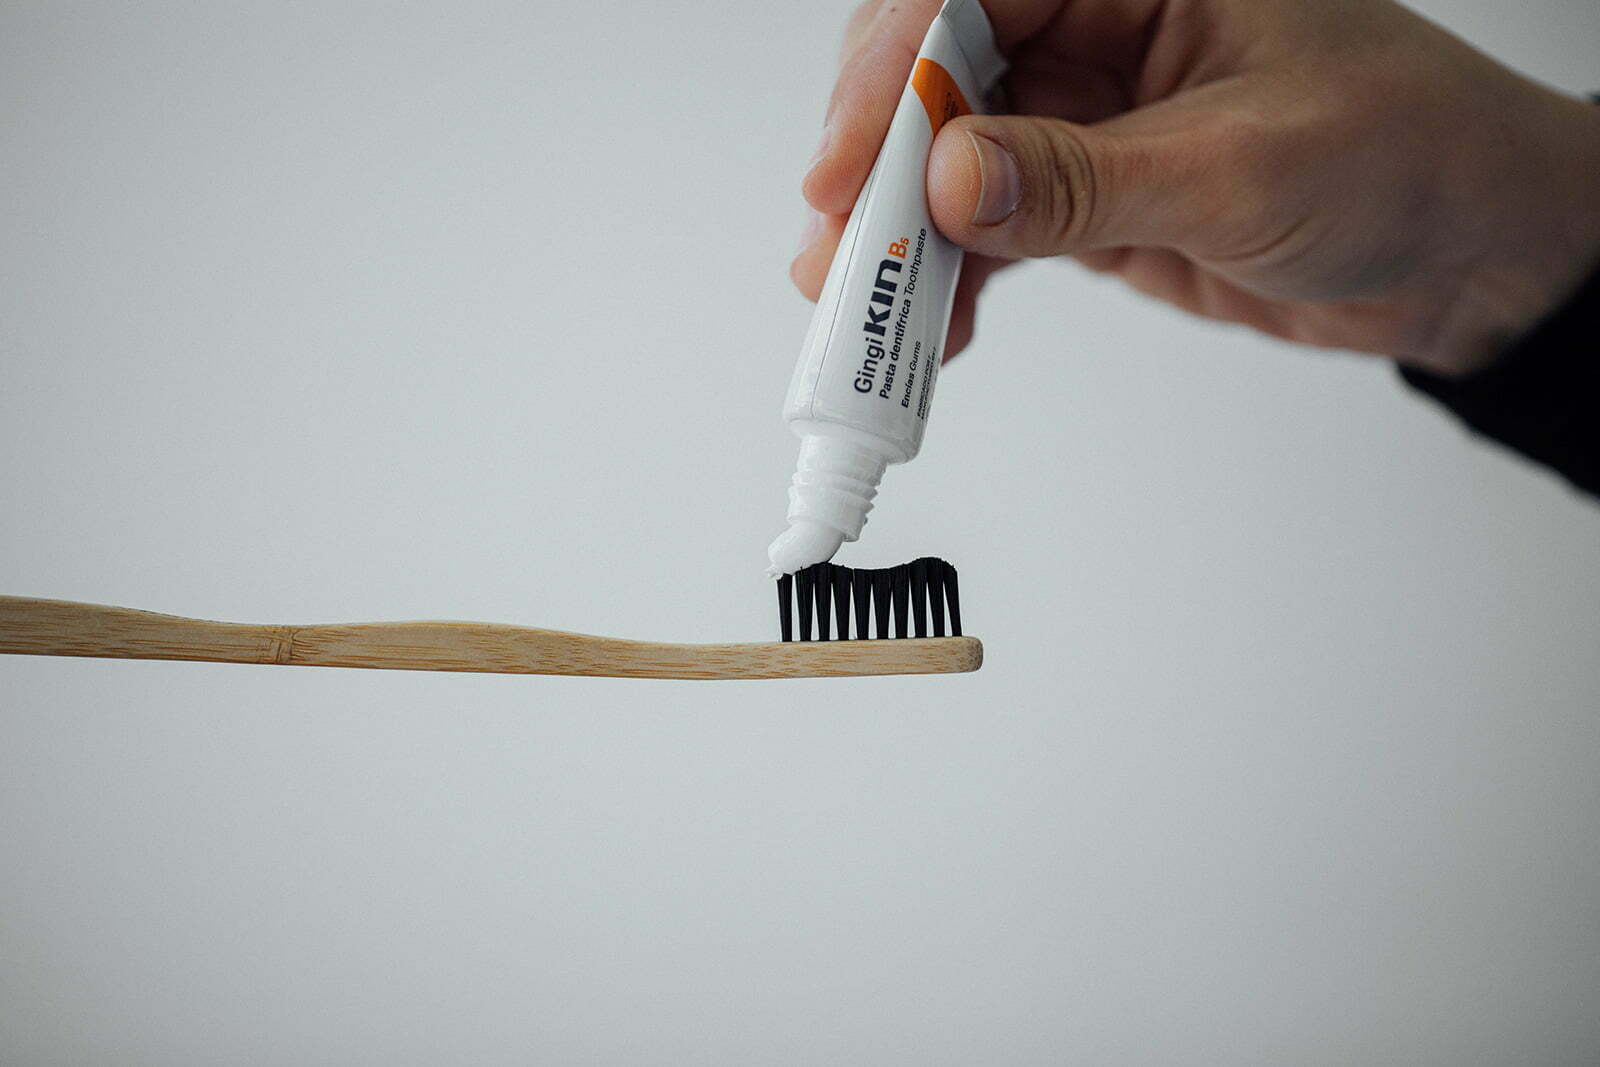 Cepillo de dientes: Eléctrico o manual ¿Cuál es mejor? 3